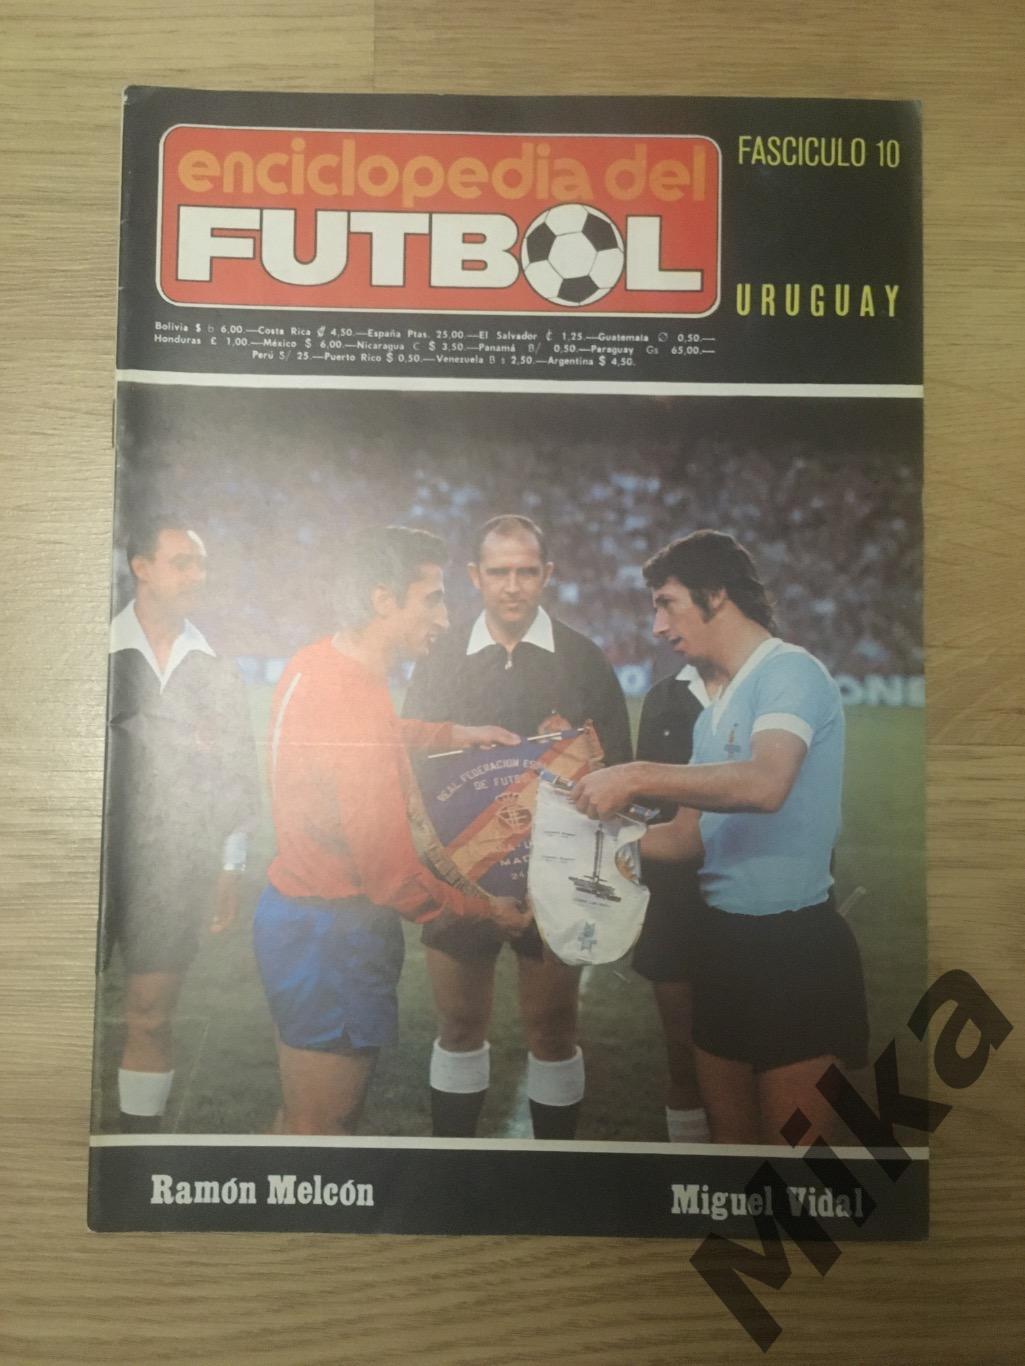 Enciclopedia del futbol - 10 Уругвай